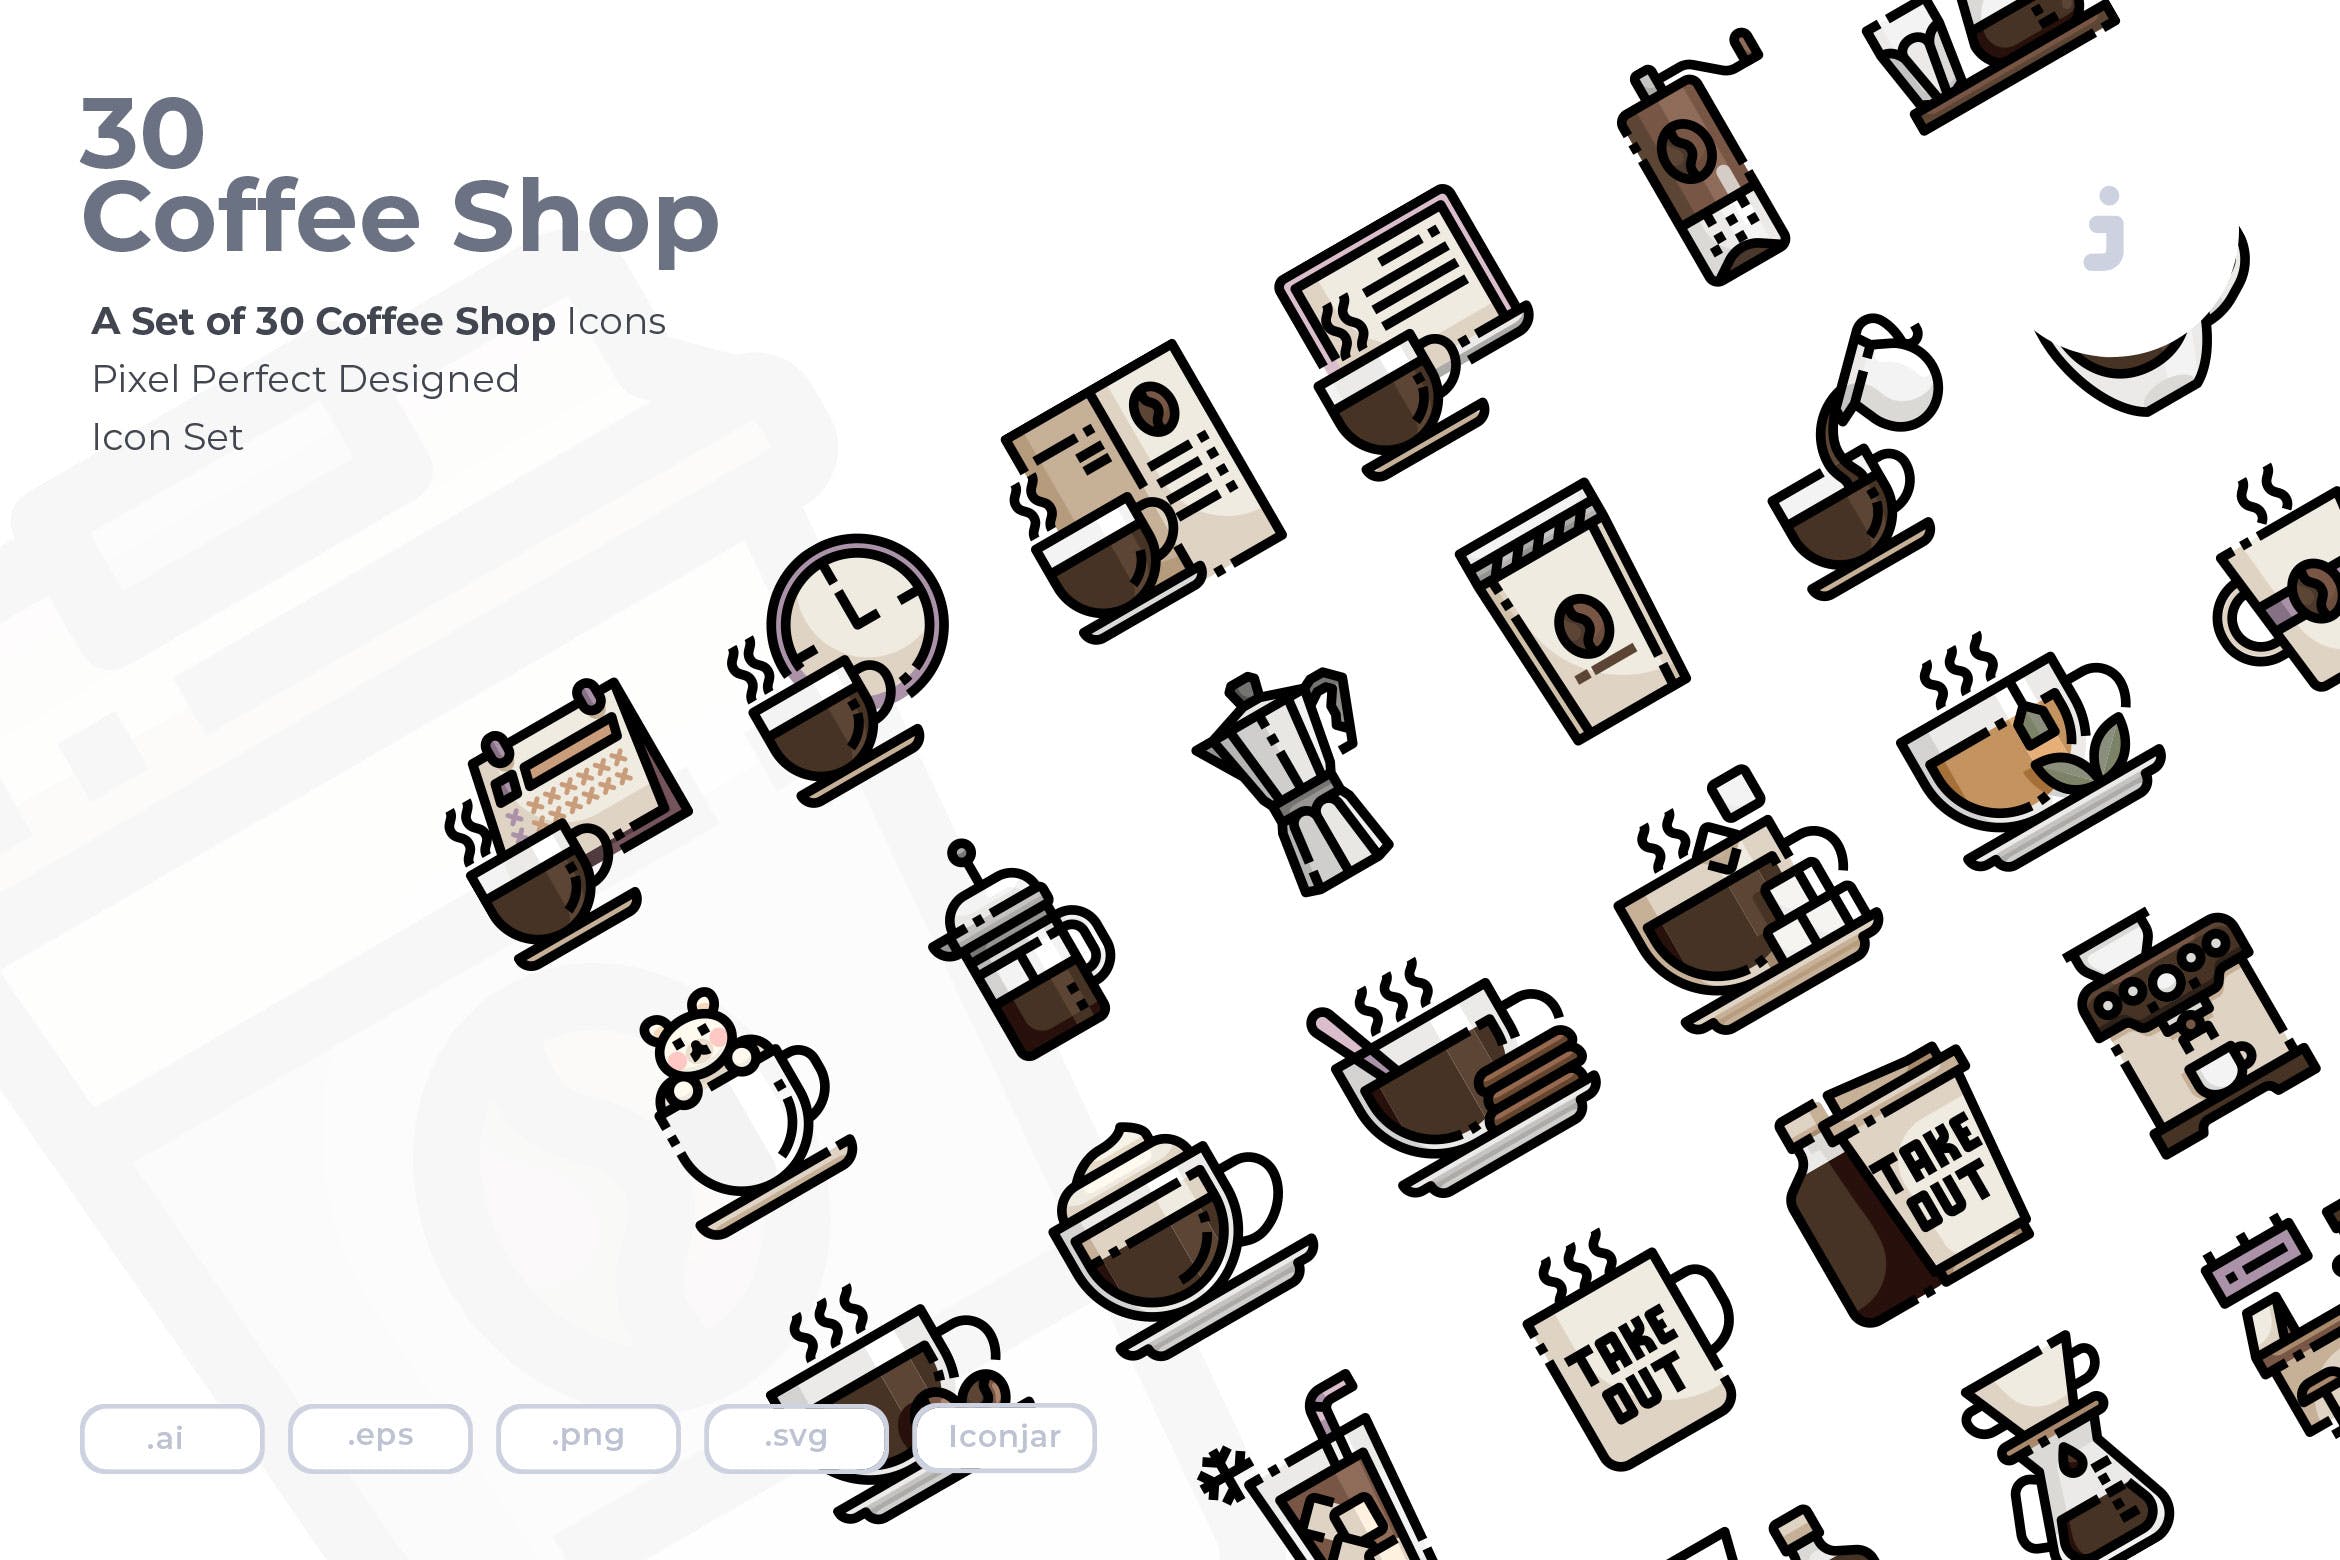 30枚咖啡/咖啡店矢量16图库精选图标素材 30 Coffee Shop Icons插图